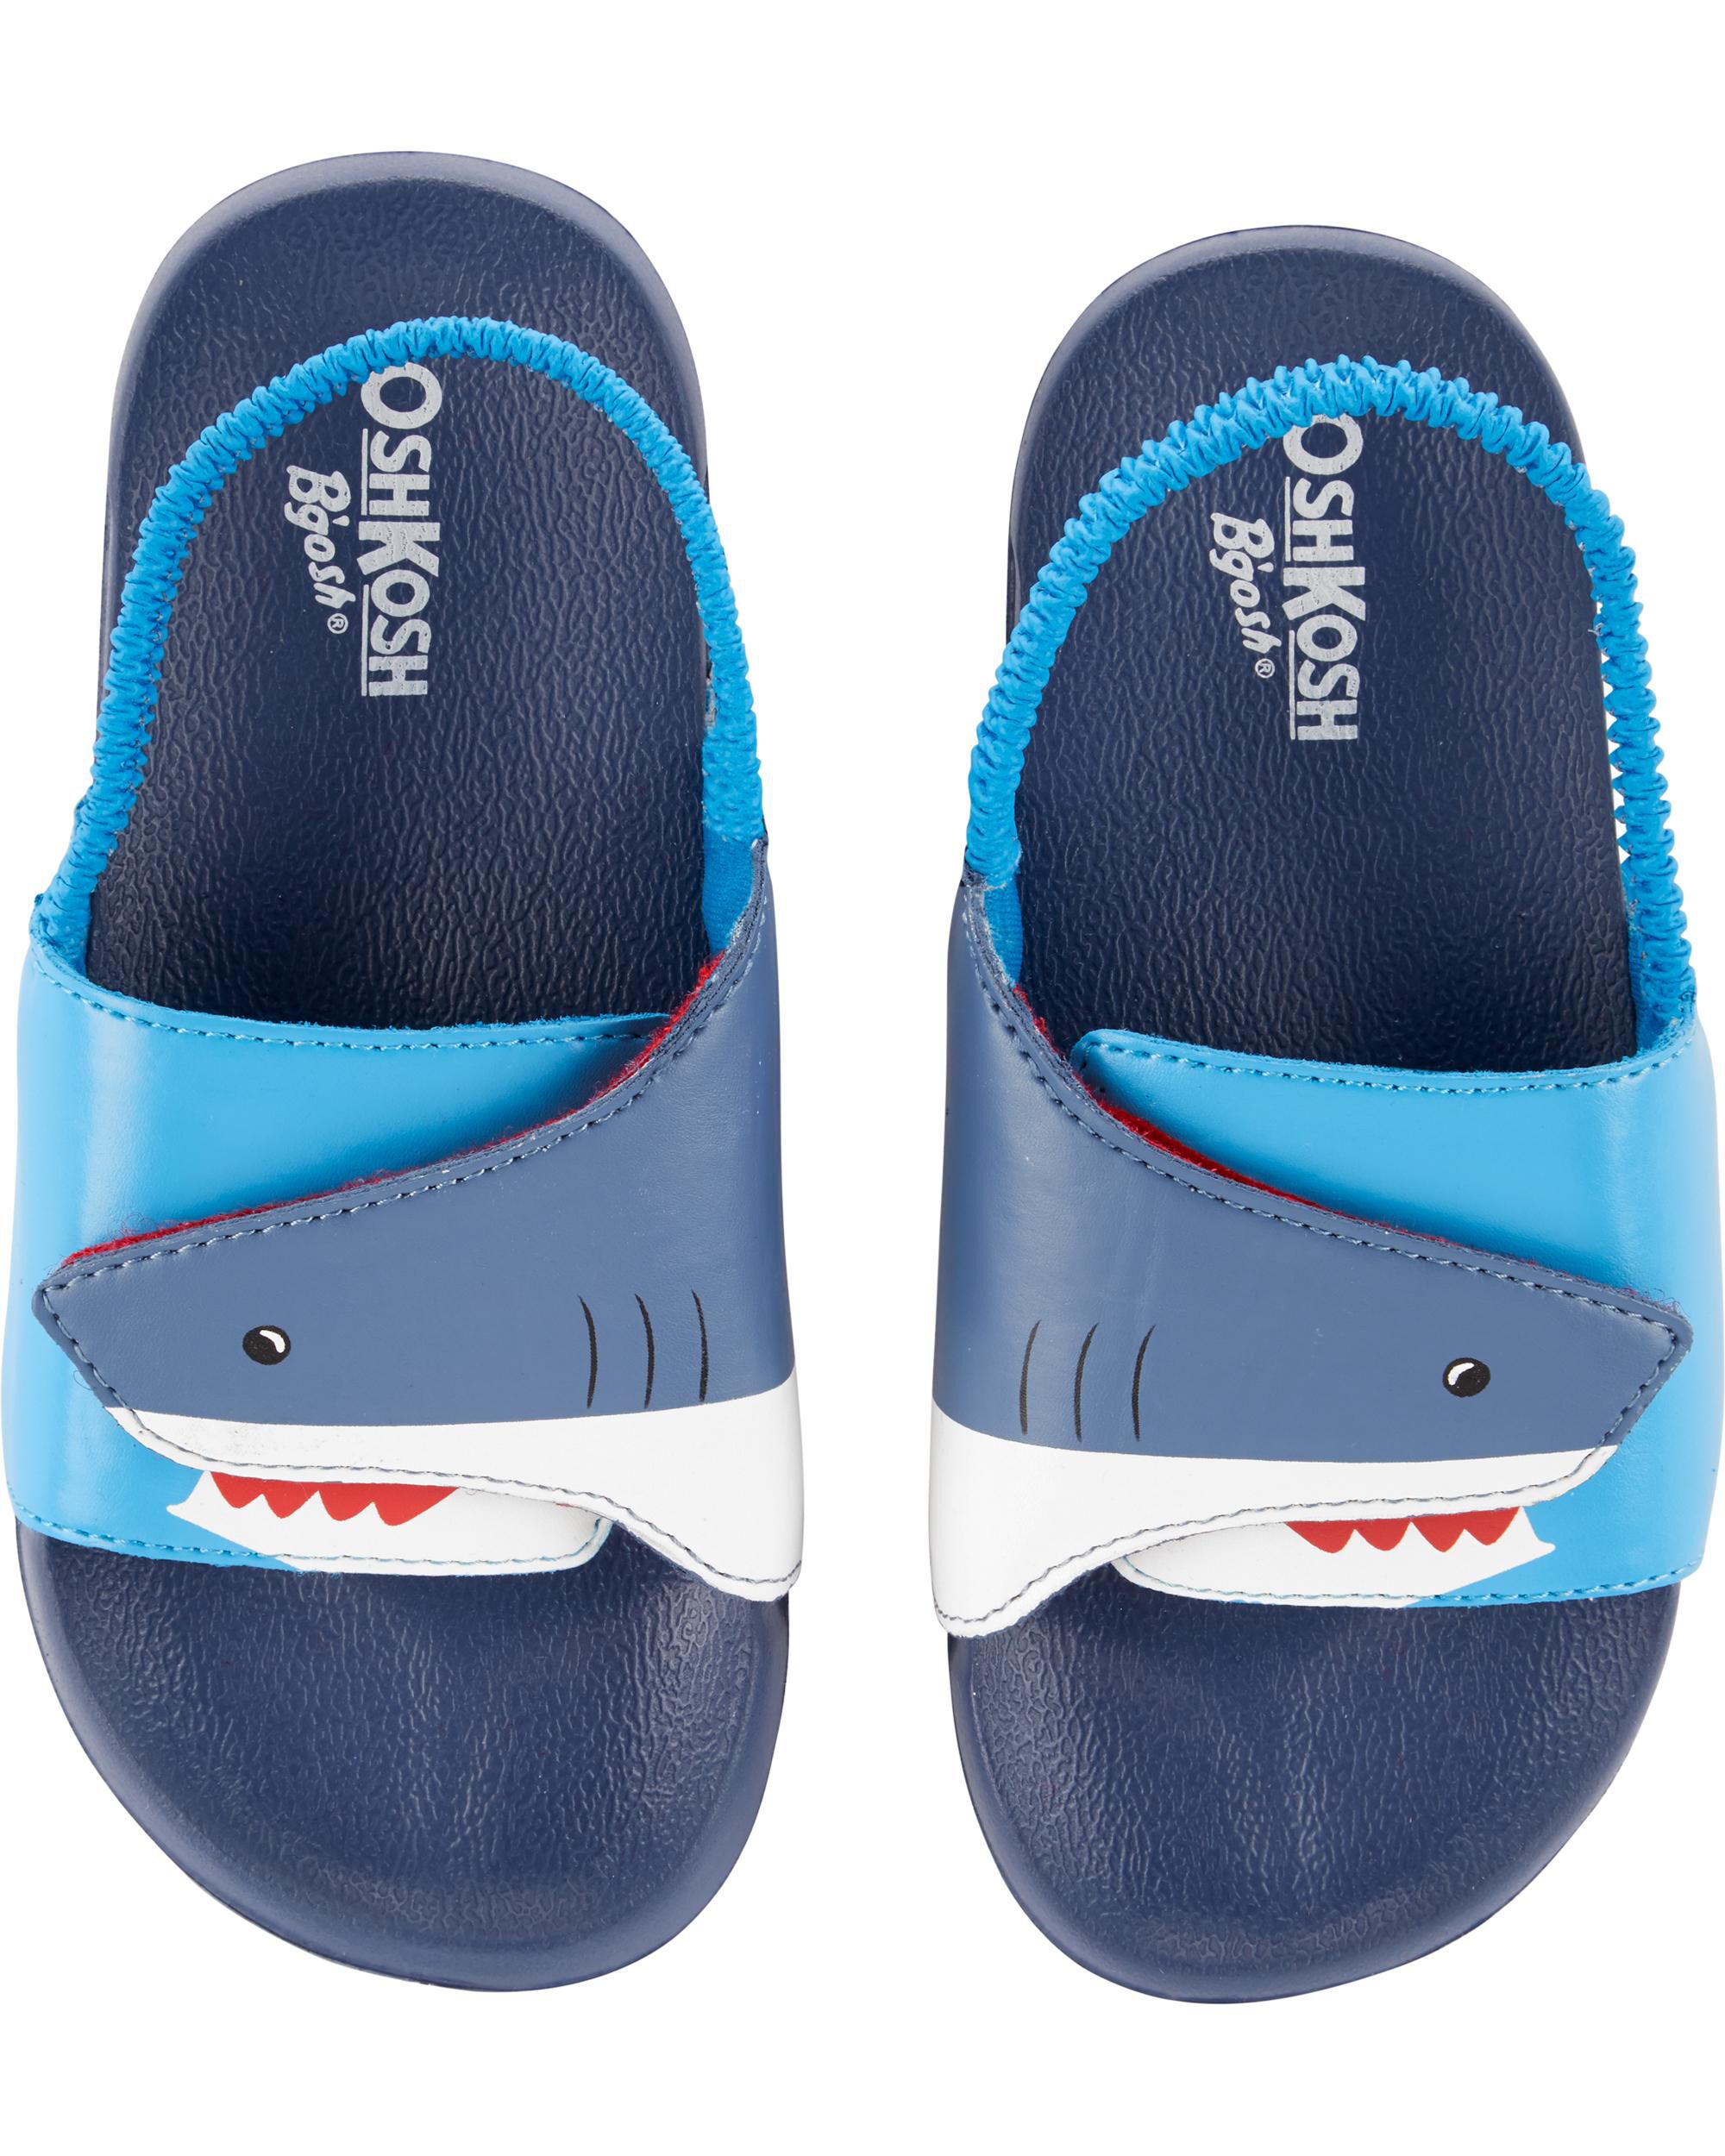 carter's shark sandals